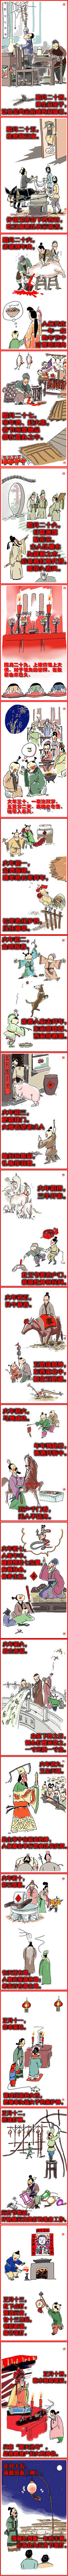 【传统文化】中国人过年习俗——古画完整版...